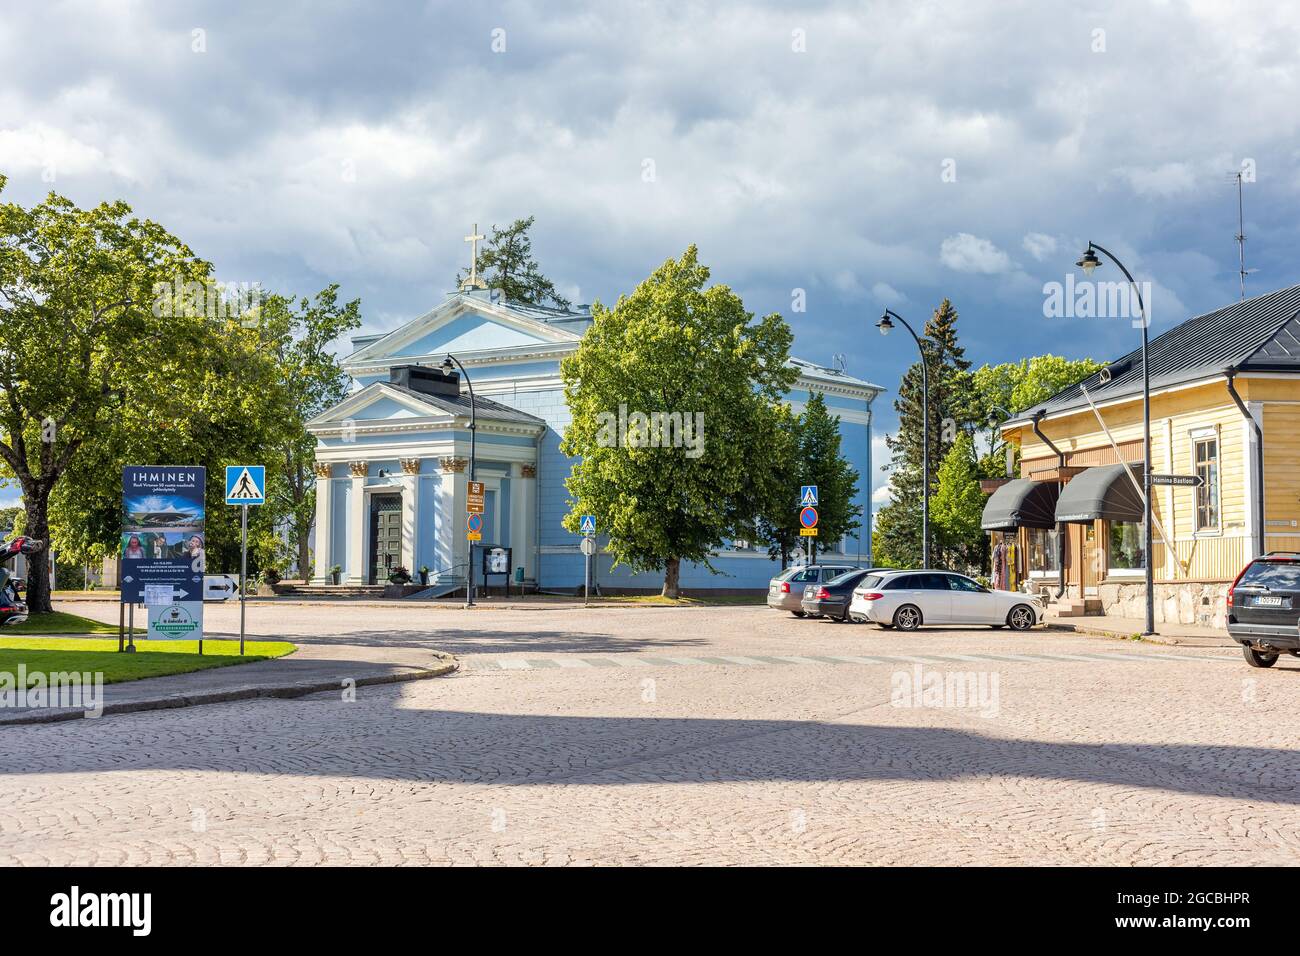 HAMINA, FINNLAND - 04-08-2021: Die blaue Johanniskirche auf dem zentralen Platz der Altstadt von Hamina, Finnland. Stockfoto